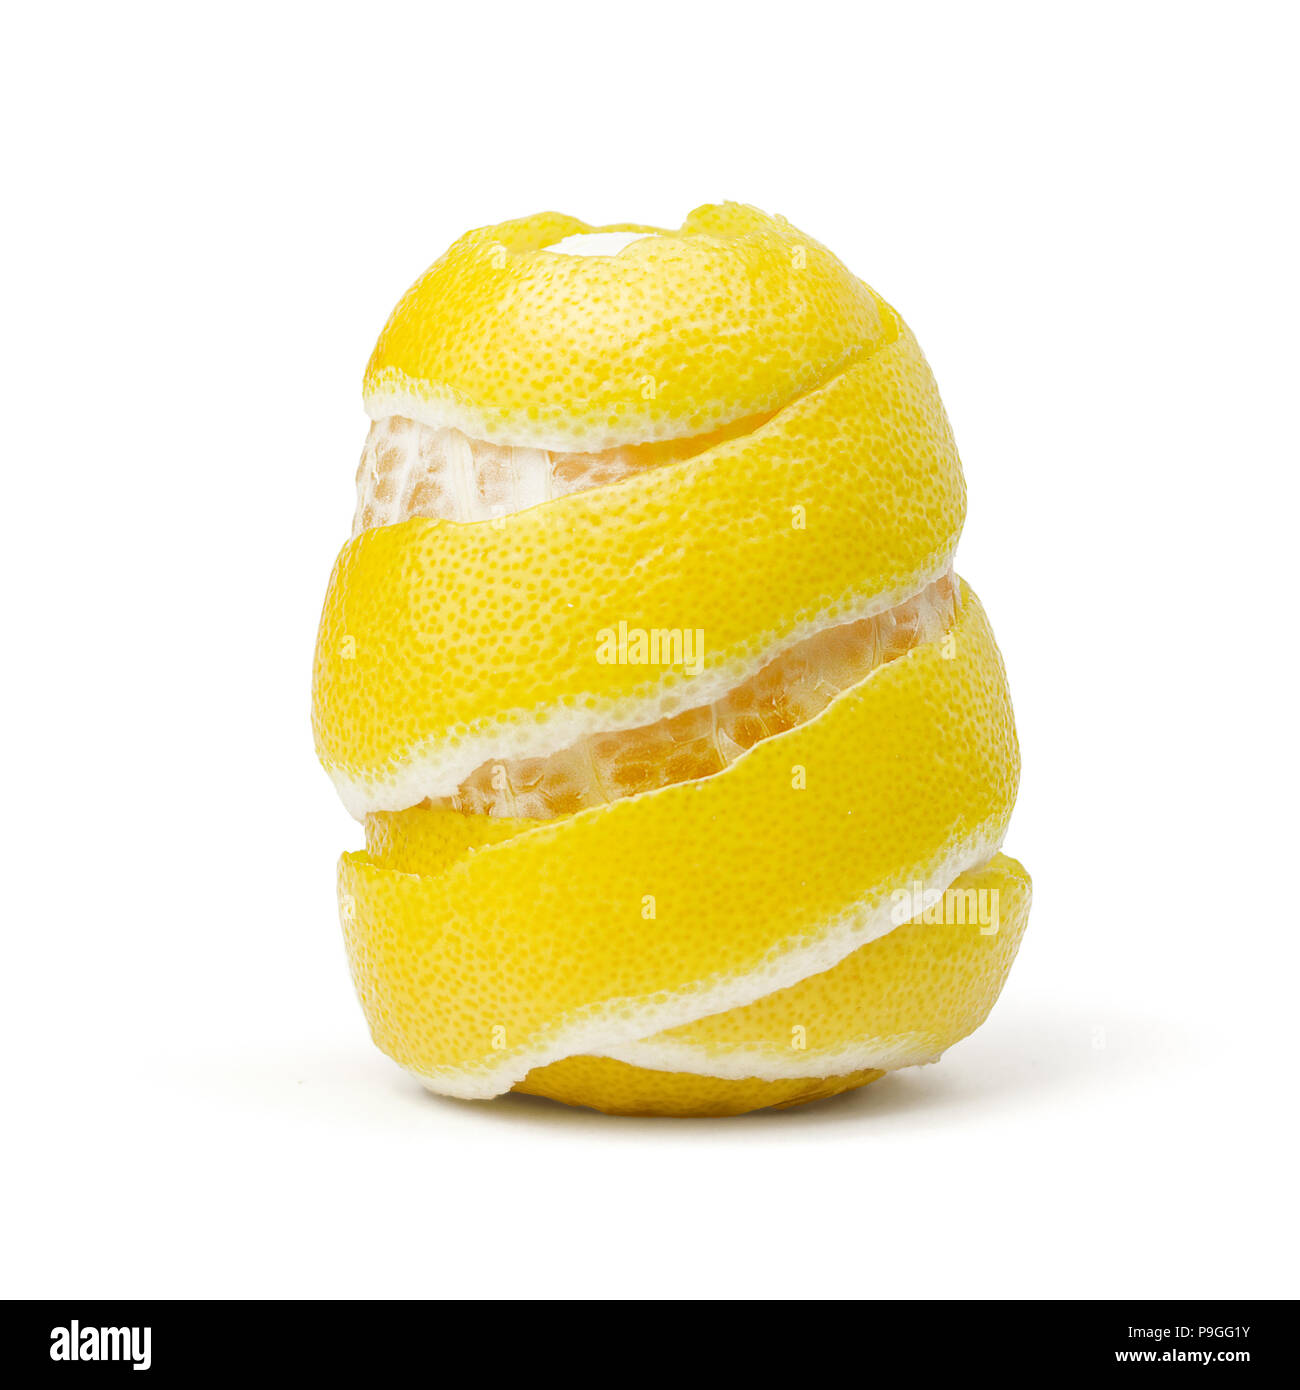 Citron, zeste râpé, sur fond blanc Banque D'Images